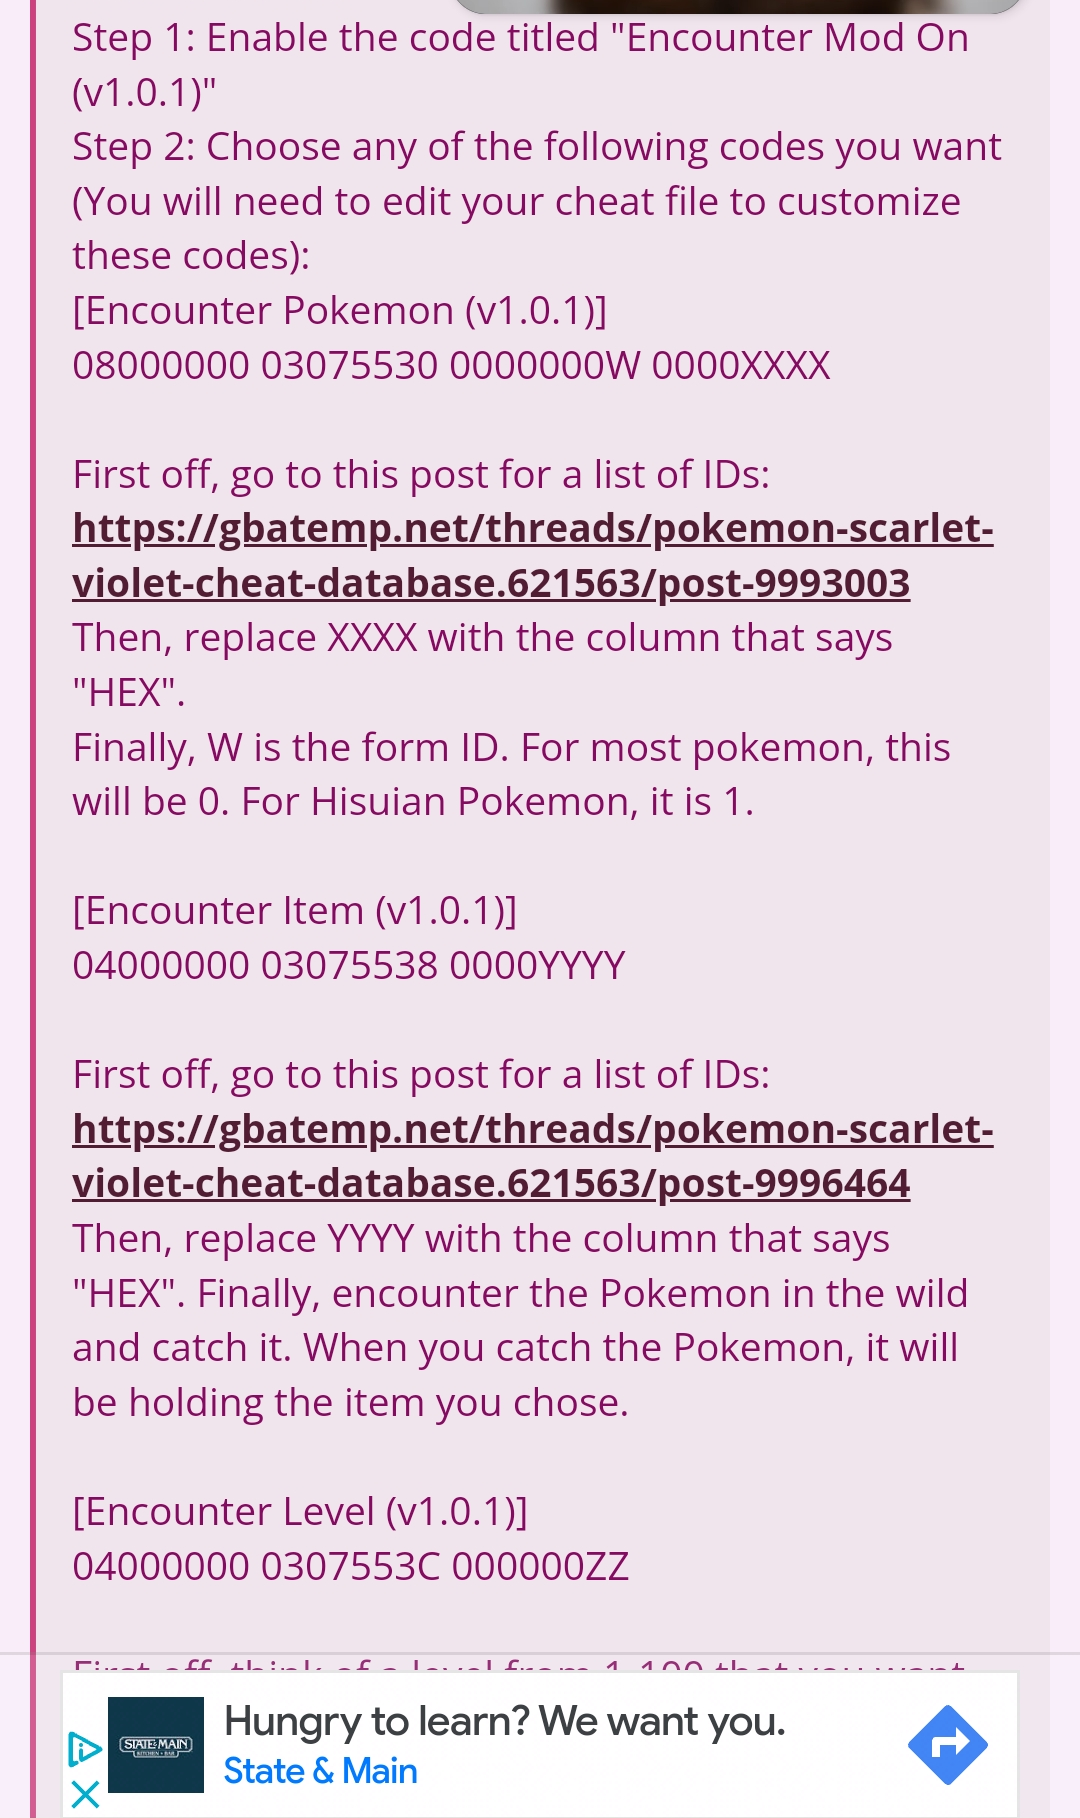 Pokemon Ultra Violet Cheats